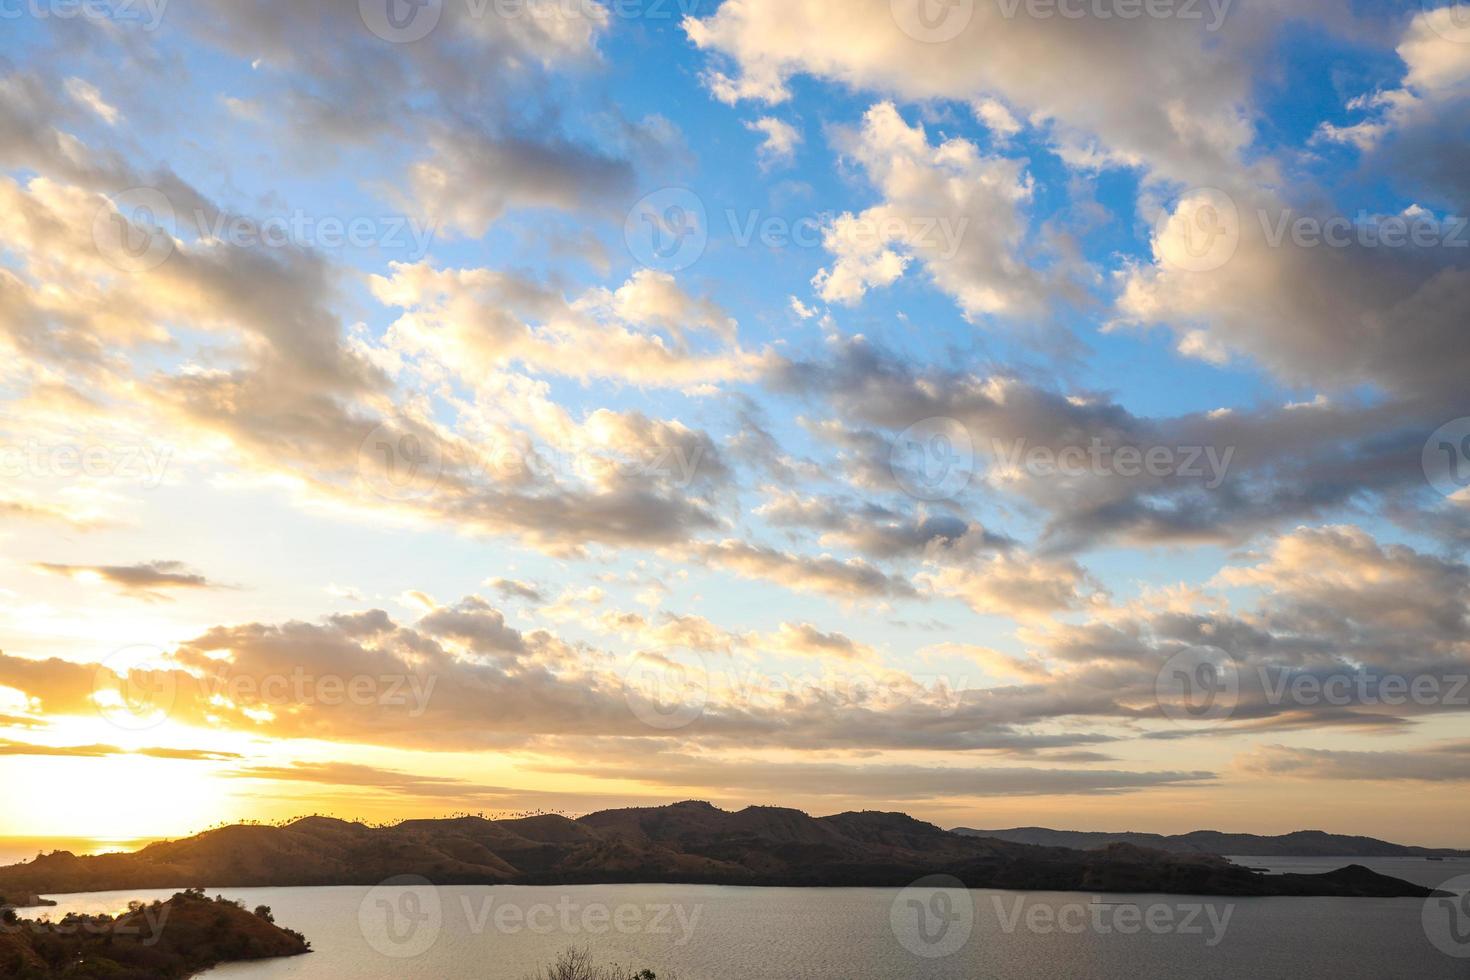 prachtige zonsondergang aan zee met heuvels en zon die onder wolkenlucht naar beneden komen foto